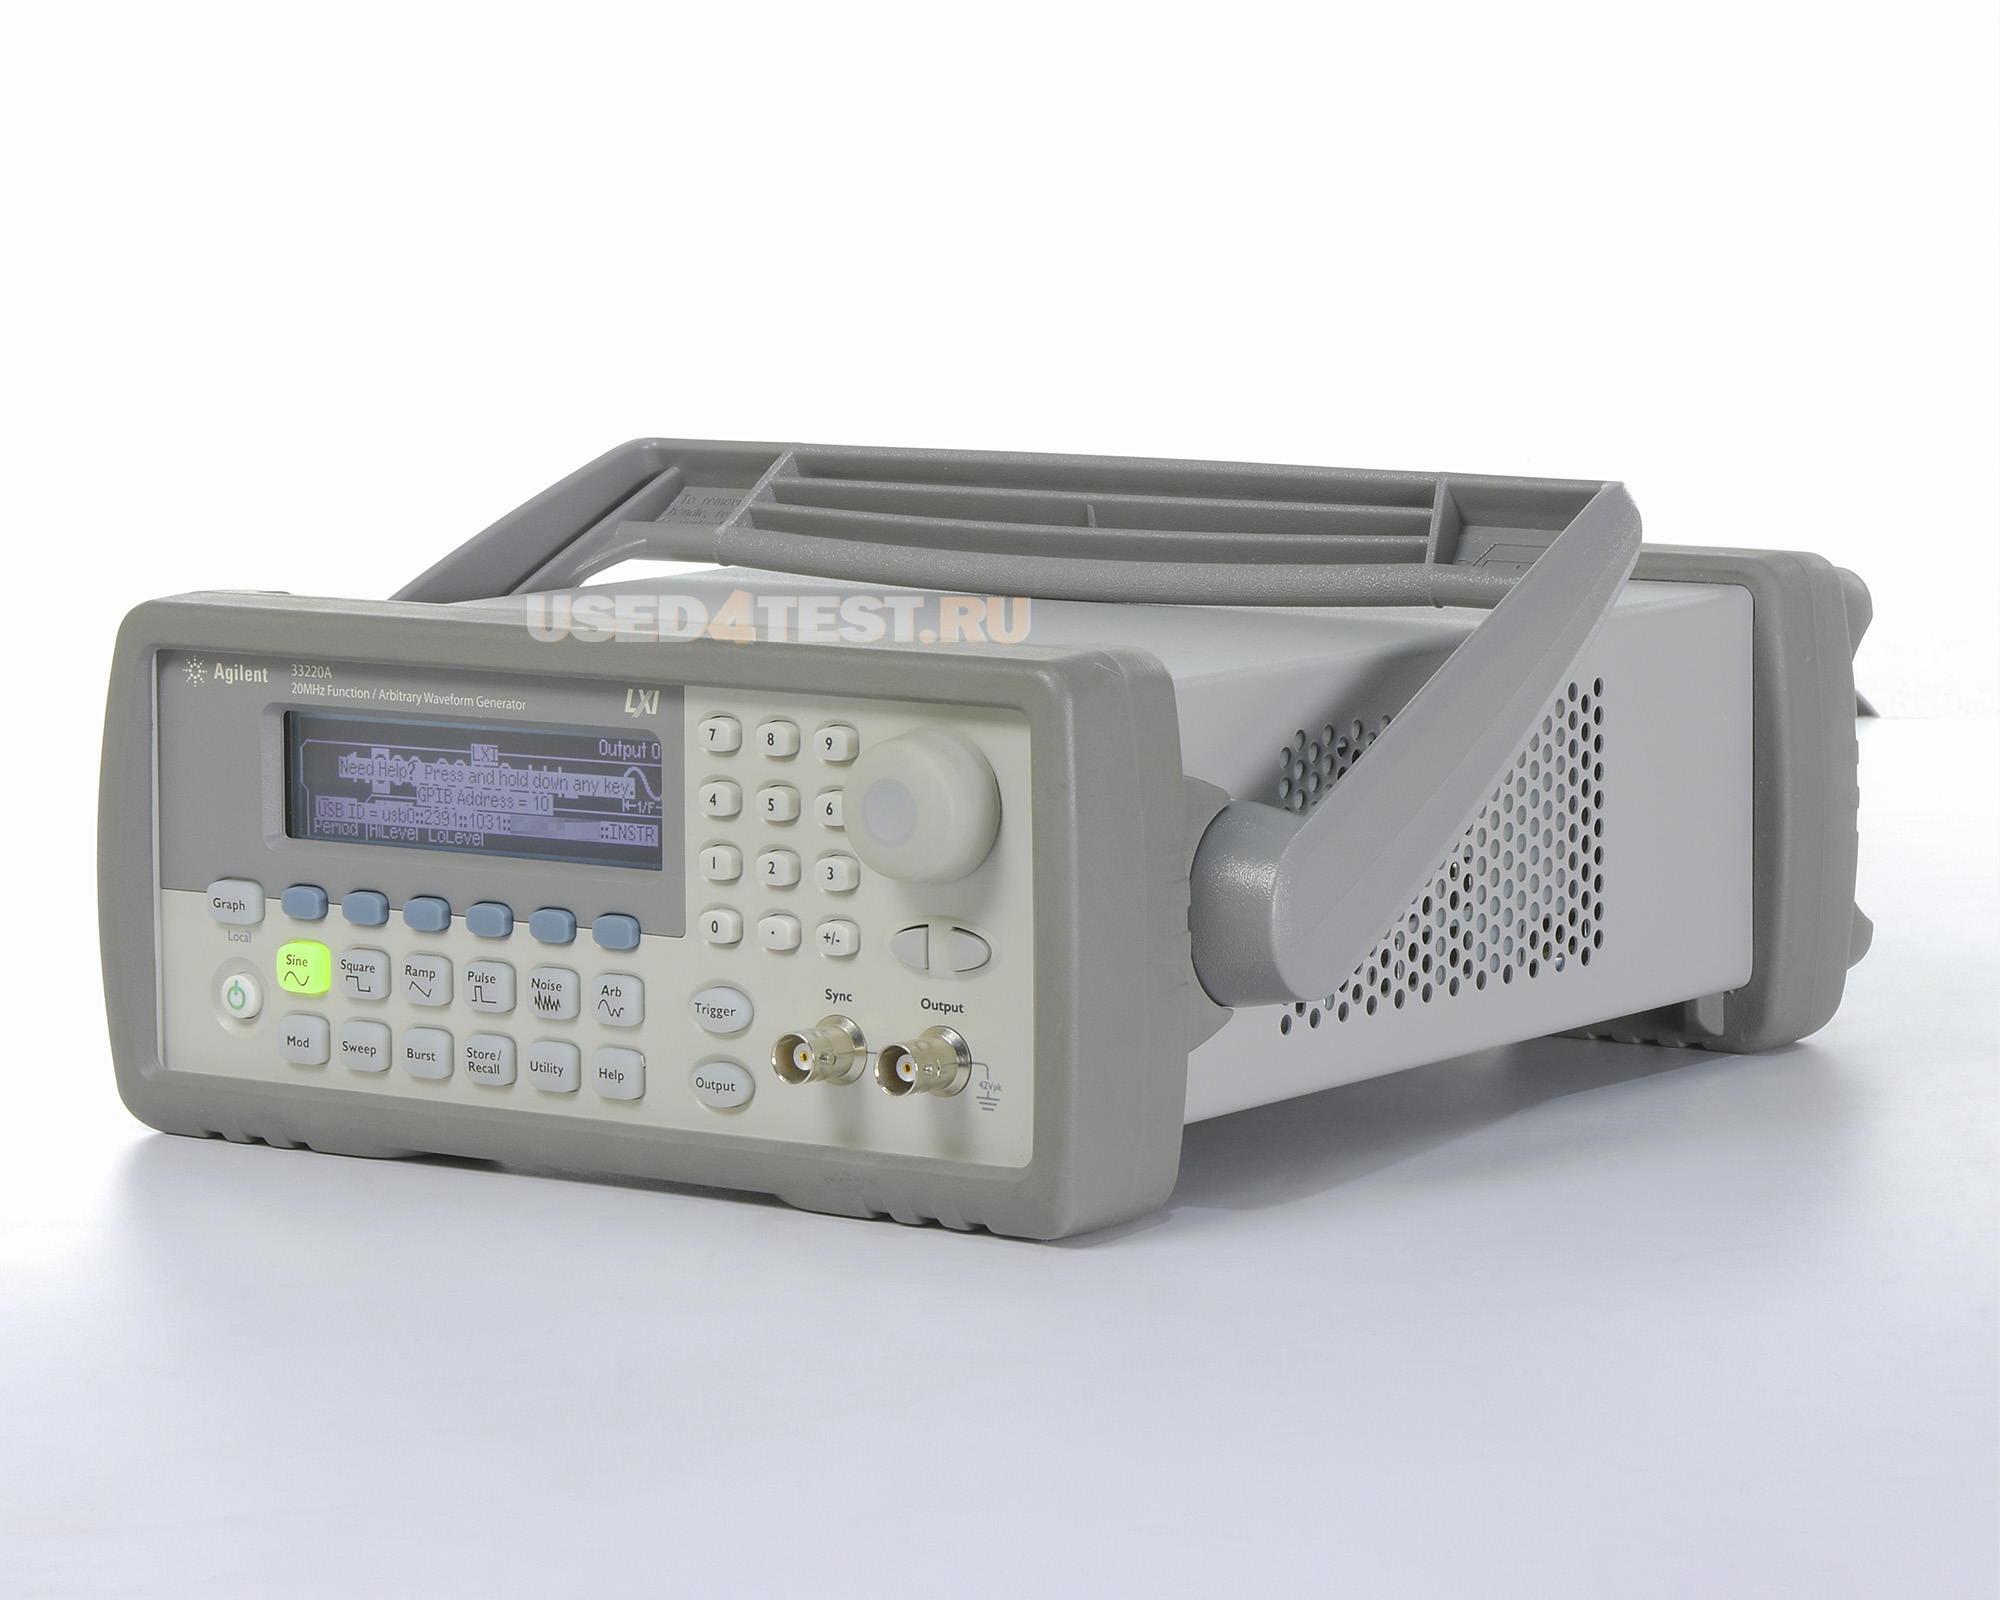 Генератор сигналов стандартной/произвольной формыAgilent 33220Aс диапазоном от 1 мкГц до 20 МГц